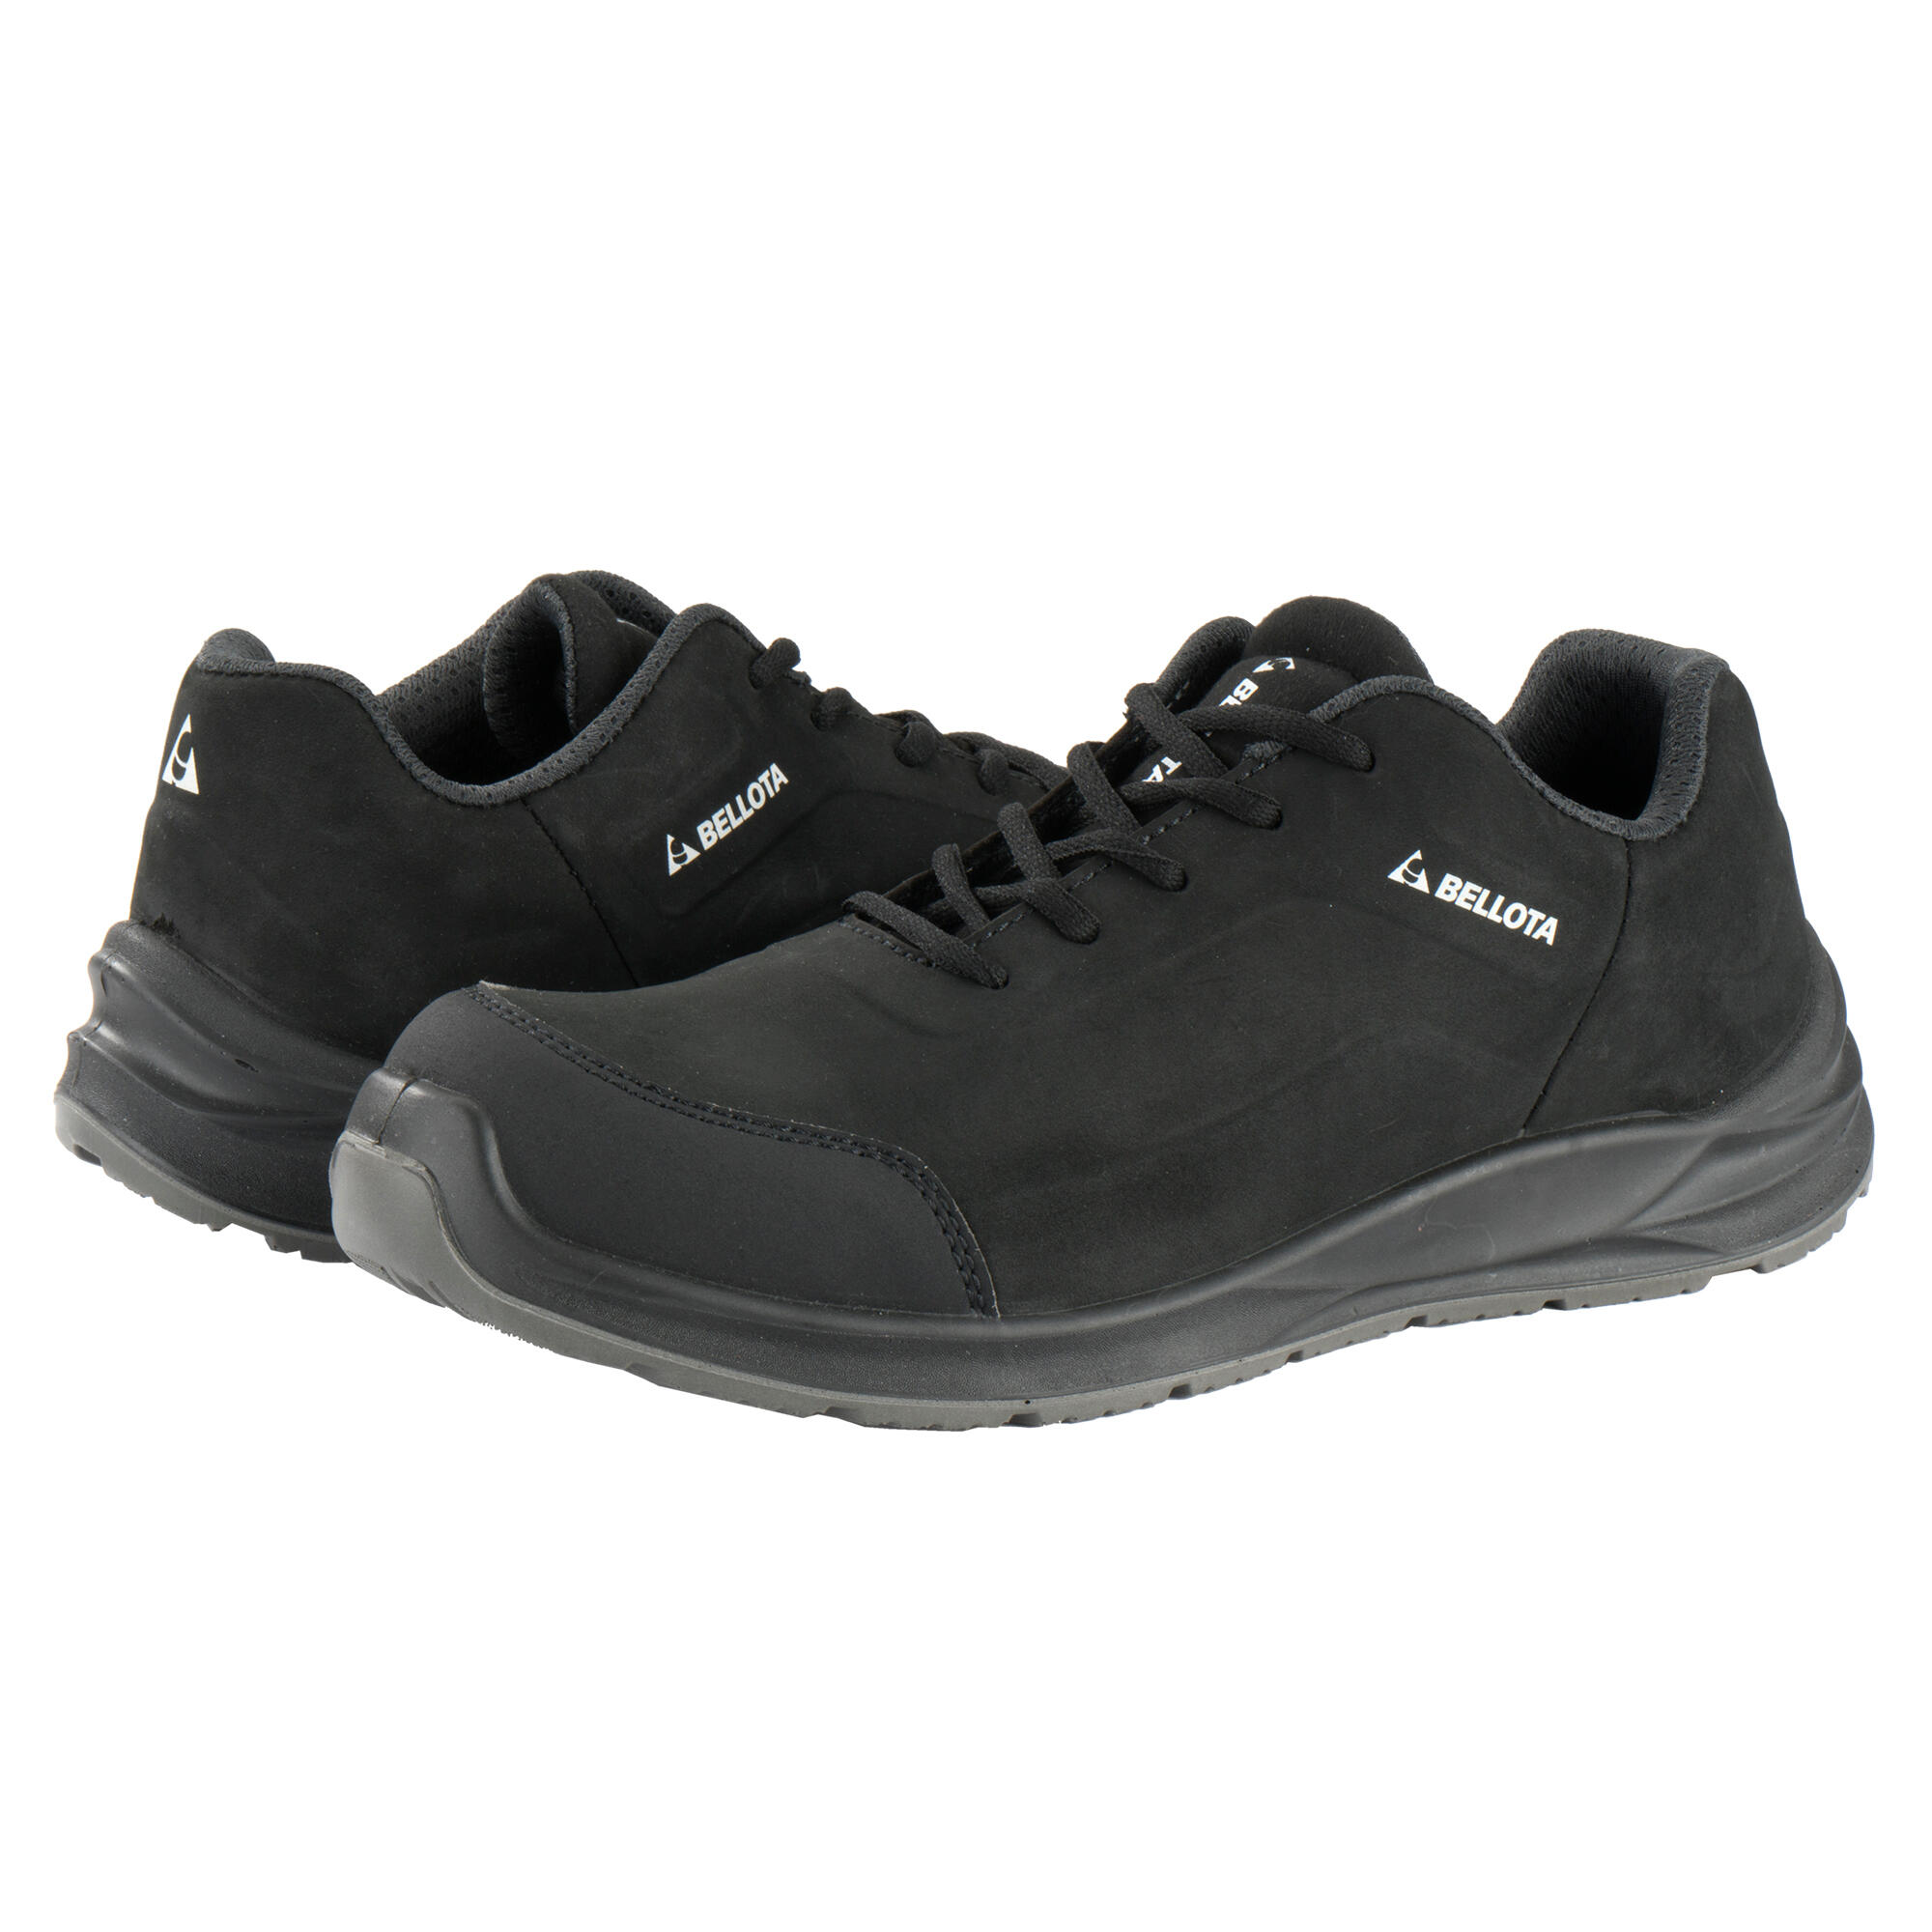 Zapatos seguridad s3 bellota flex carbón negro t43